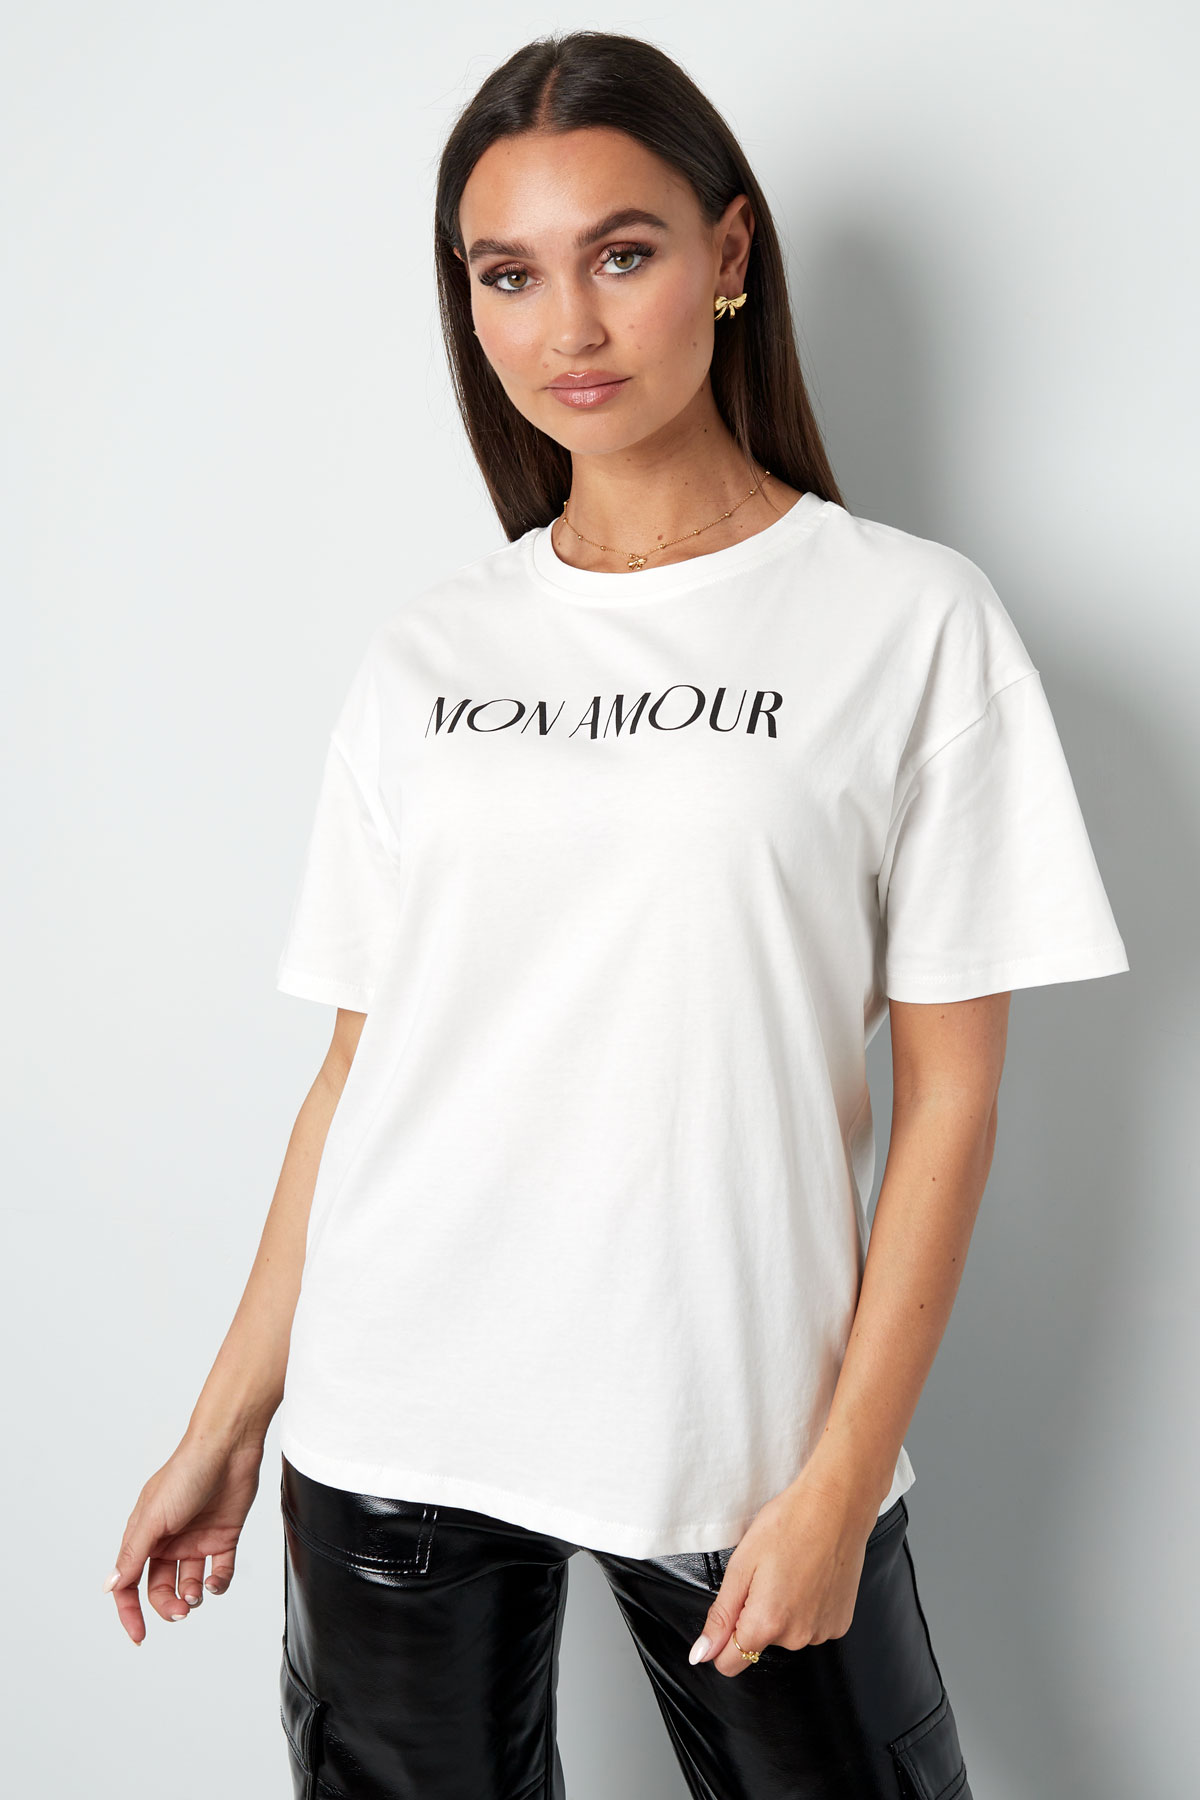 T-shirt mon amour - siyah beyaz Resim2